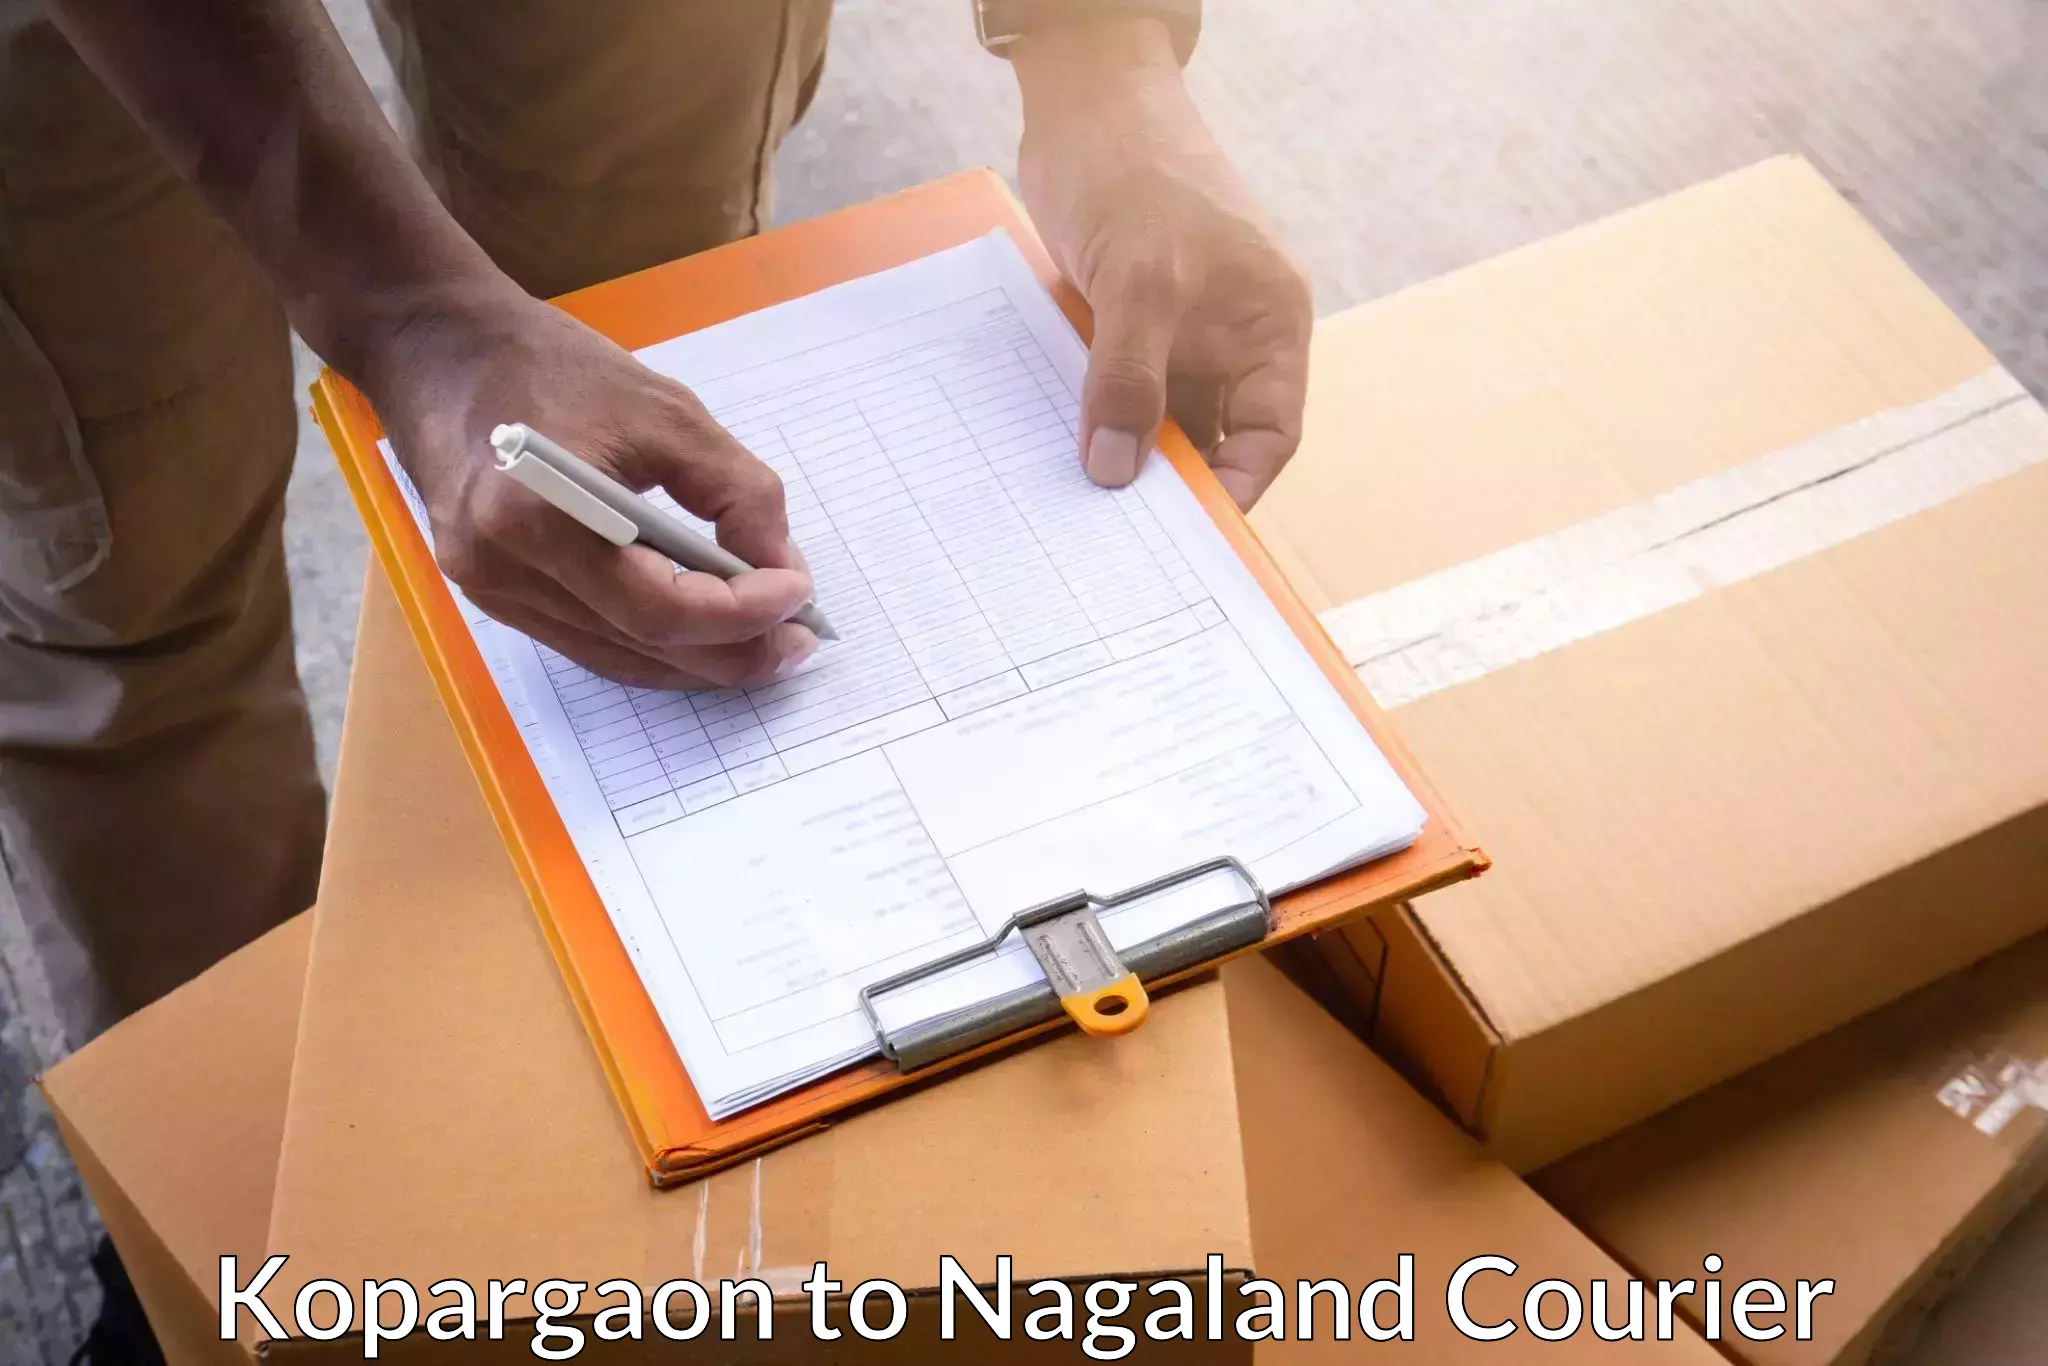 Courier service comparison Kopargaon to Dimapur